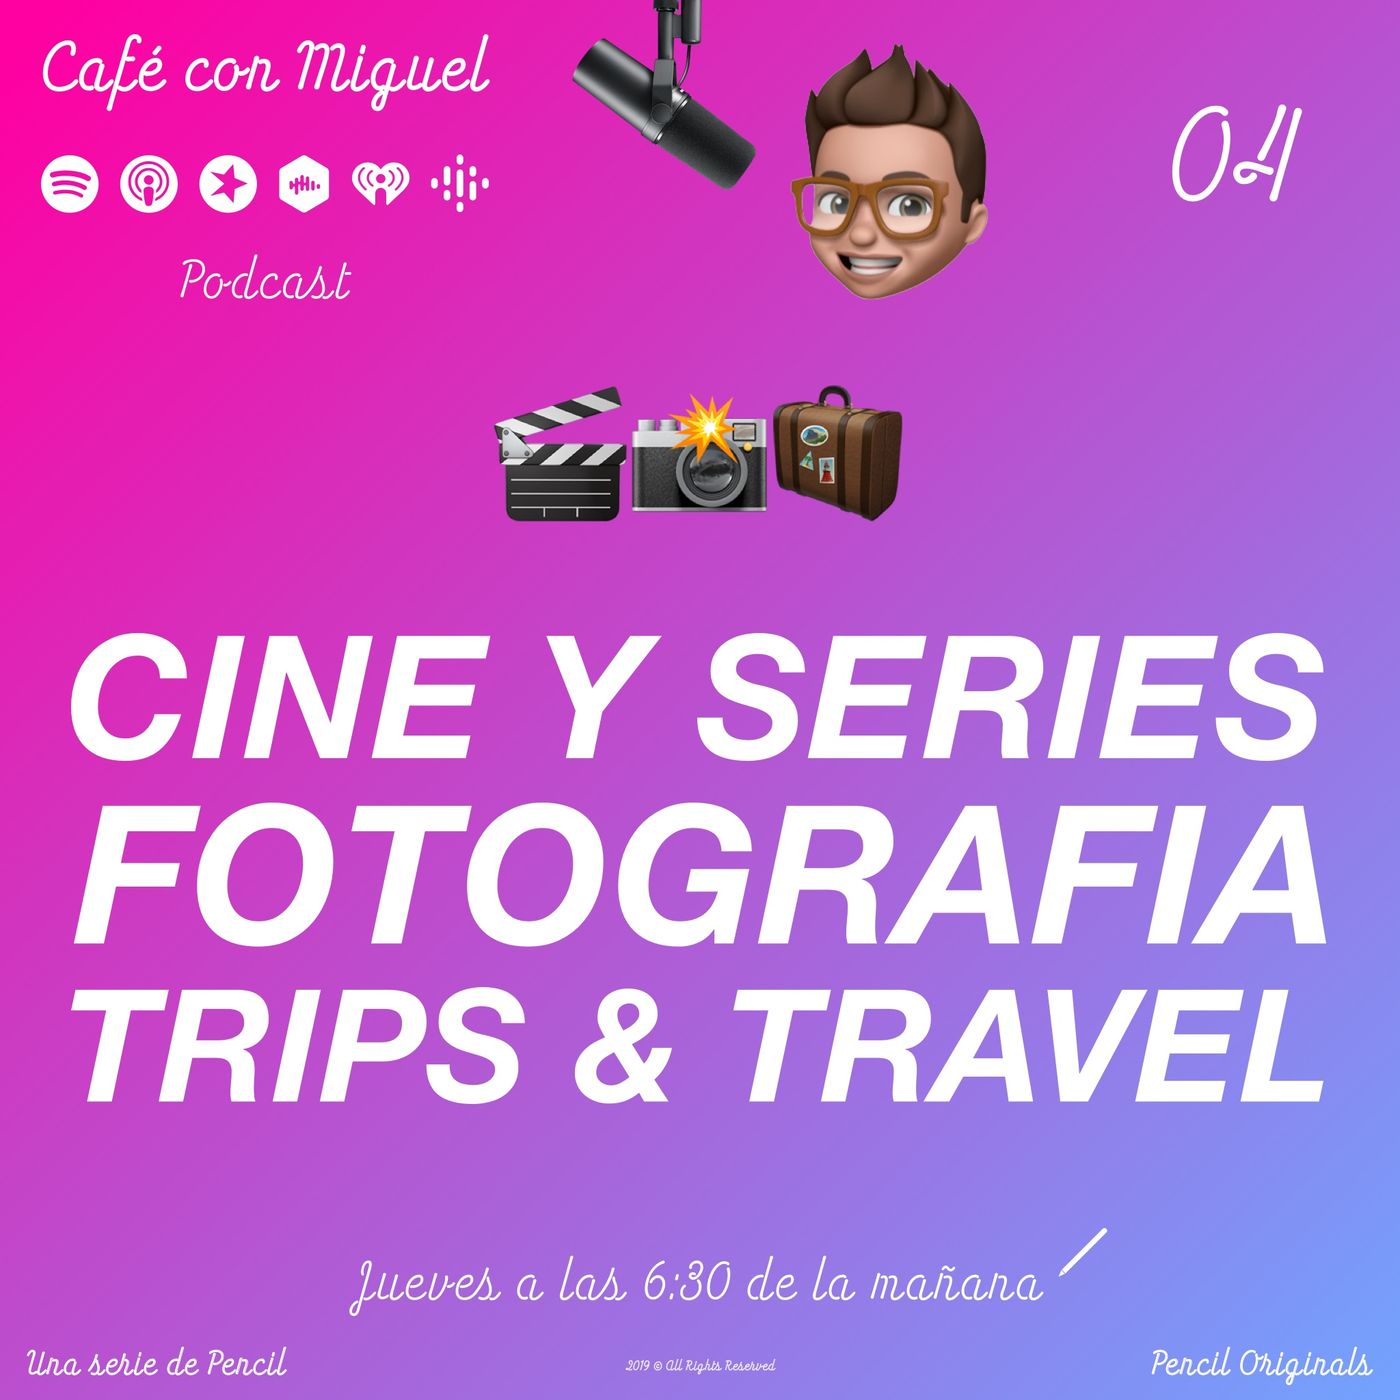 Cafe con Miguel - CINE Y SERIES FOTOGRAFIA TRIPS AND TRAVEL - PODCAST SORPRESA, ESTOY DE VACACIONES - Pencil 3